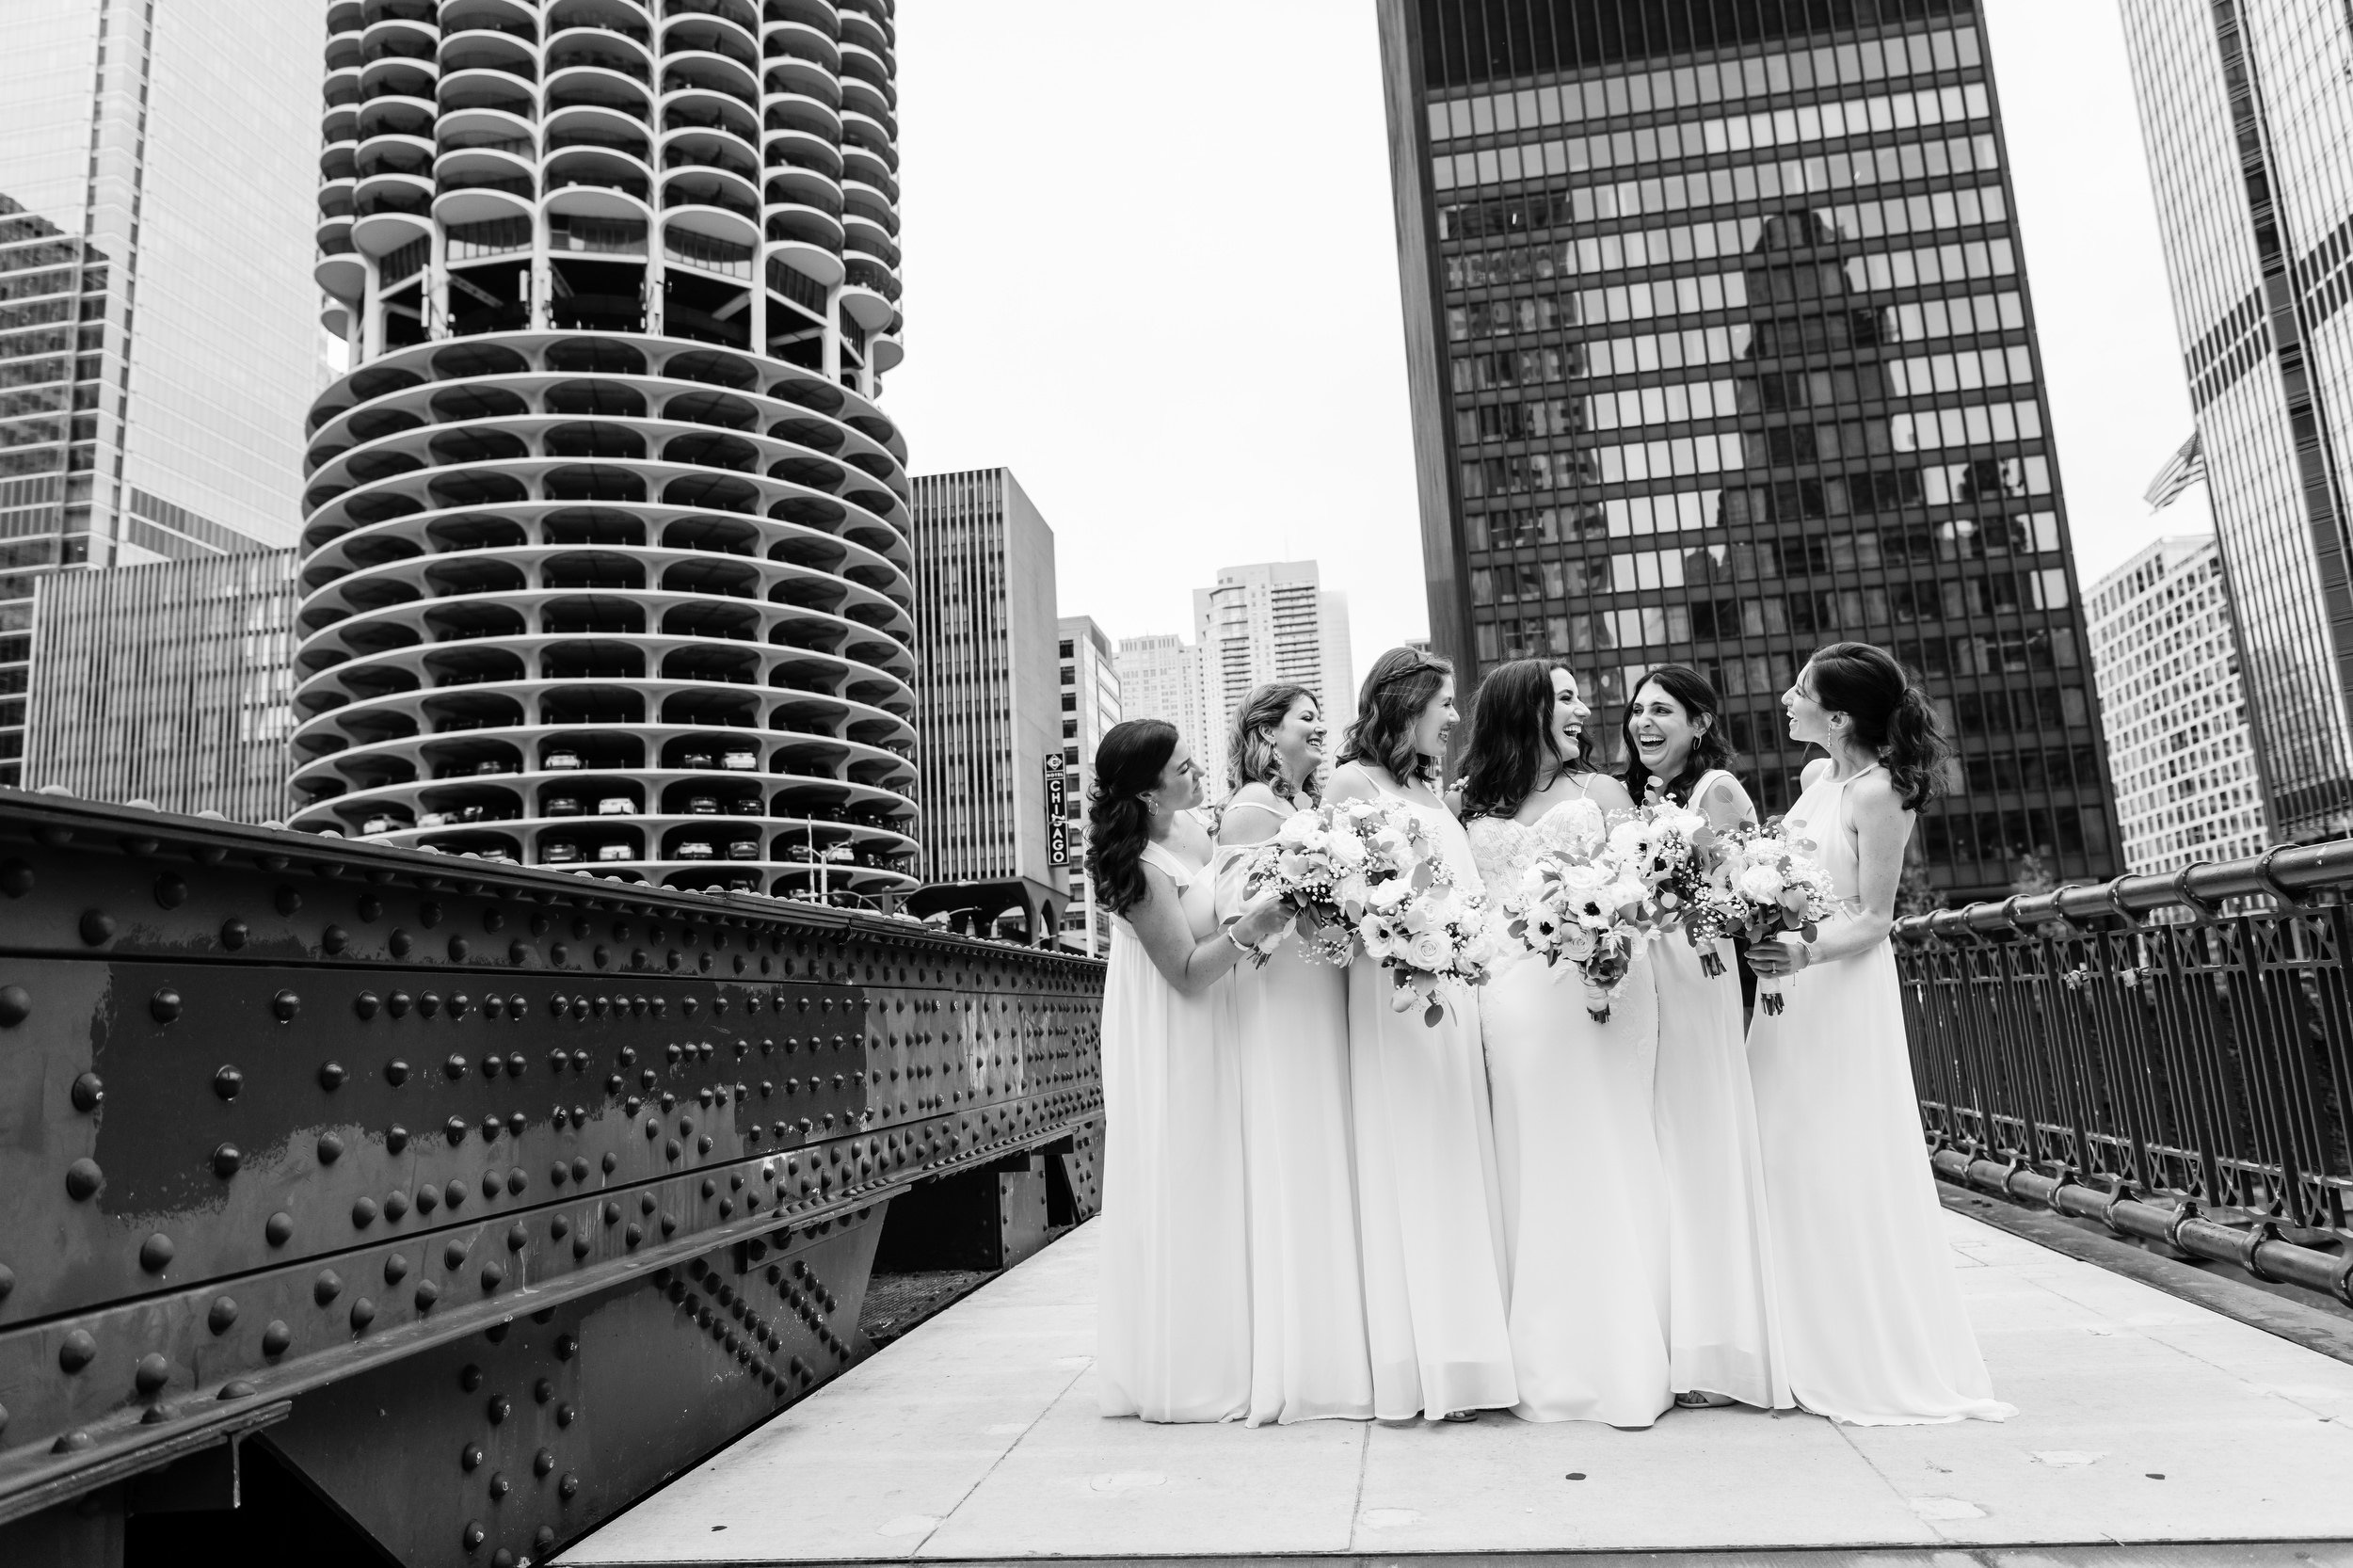 Chicago Riverwalk | Outdoor Wedding Party Photos | Chicago IL